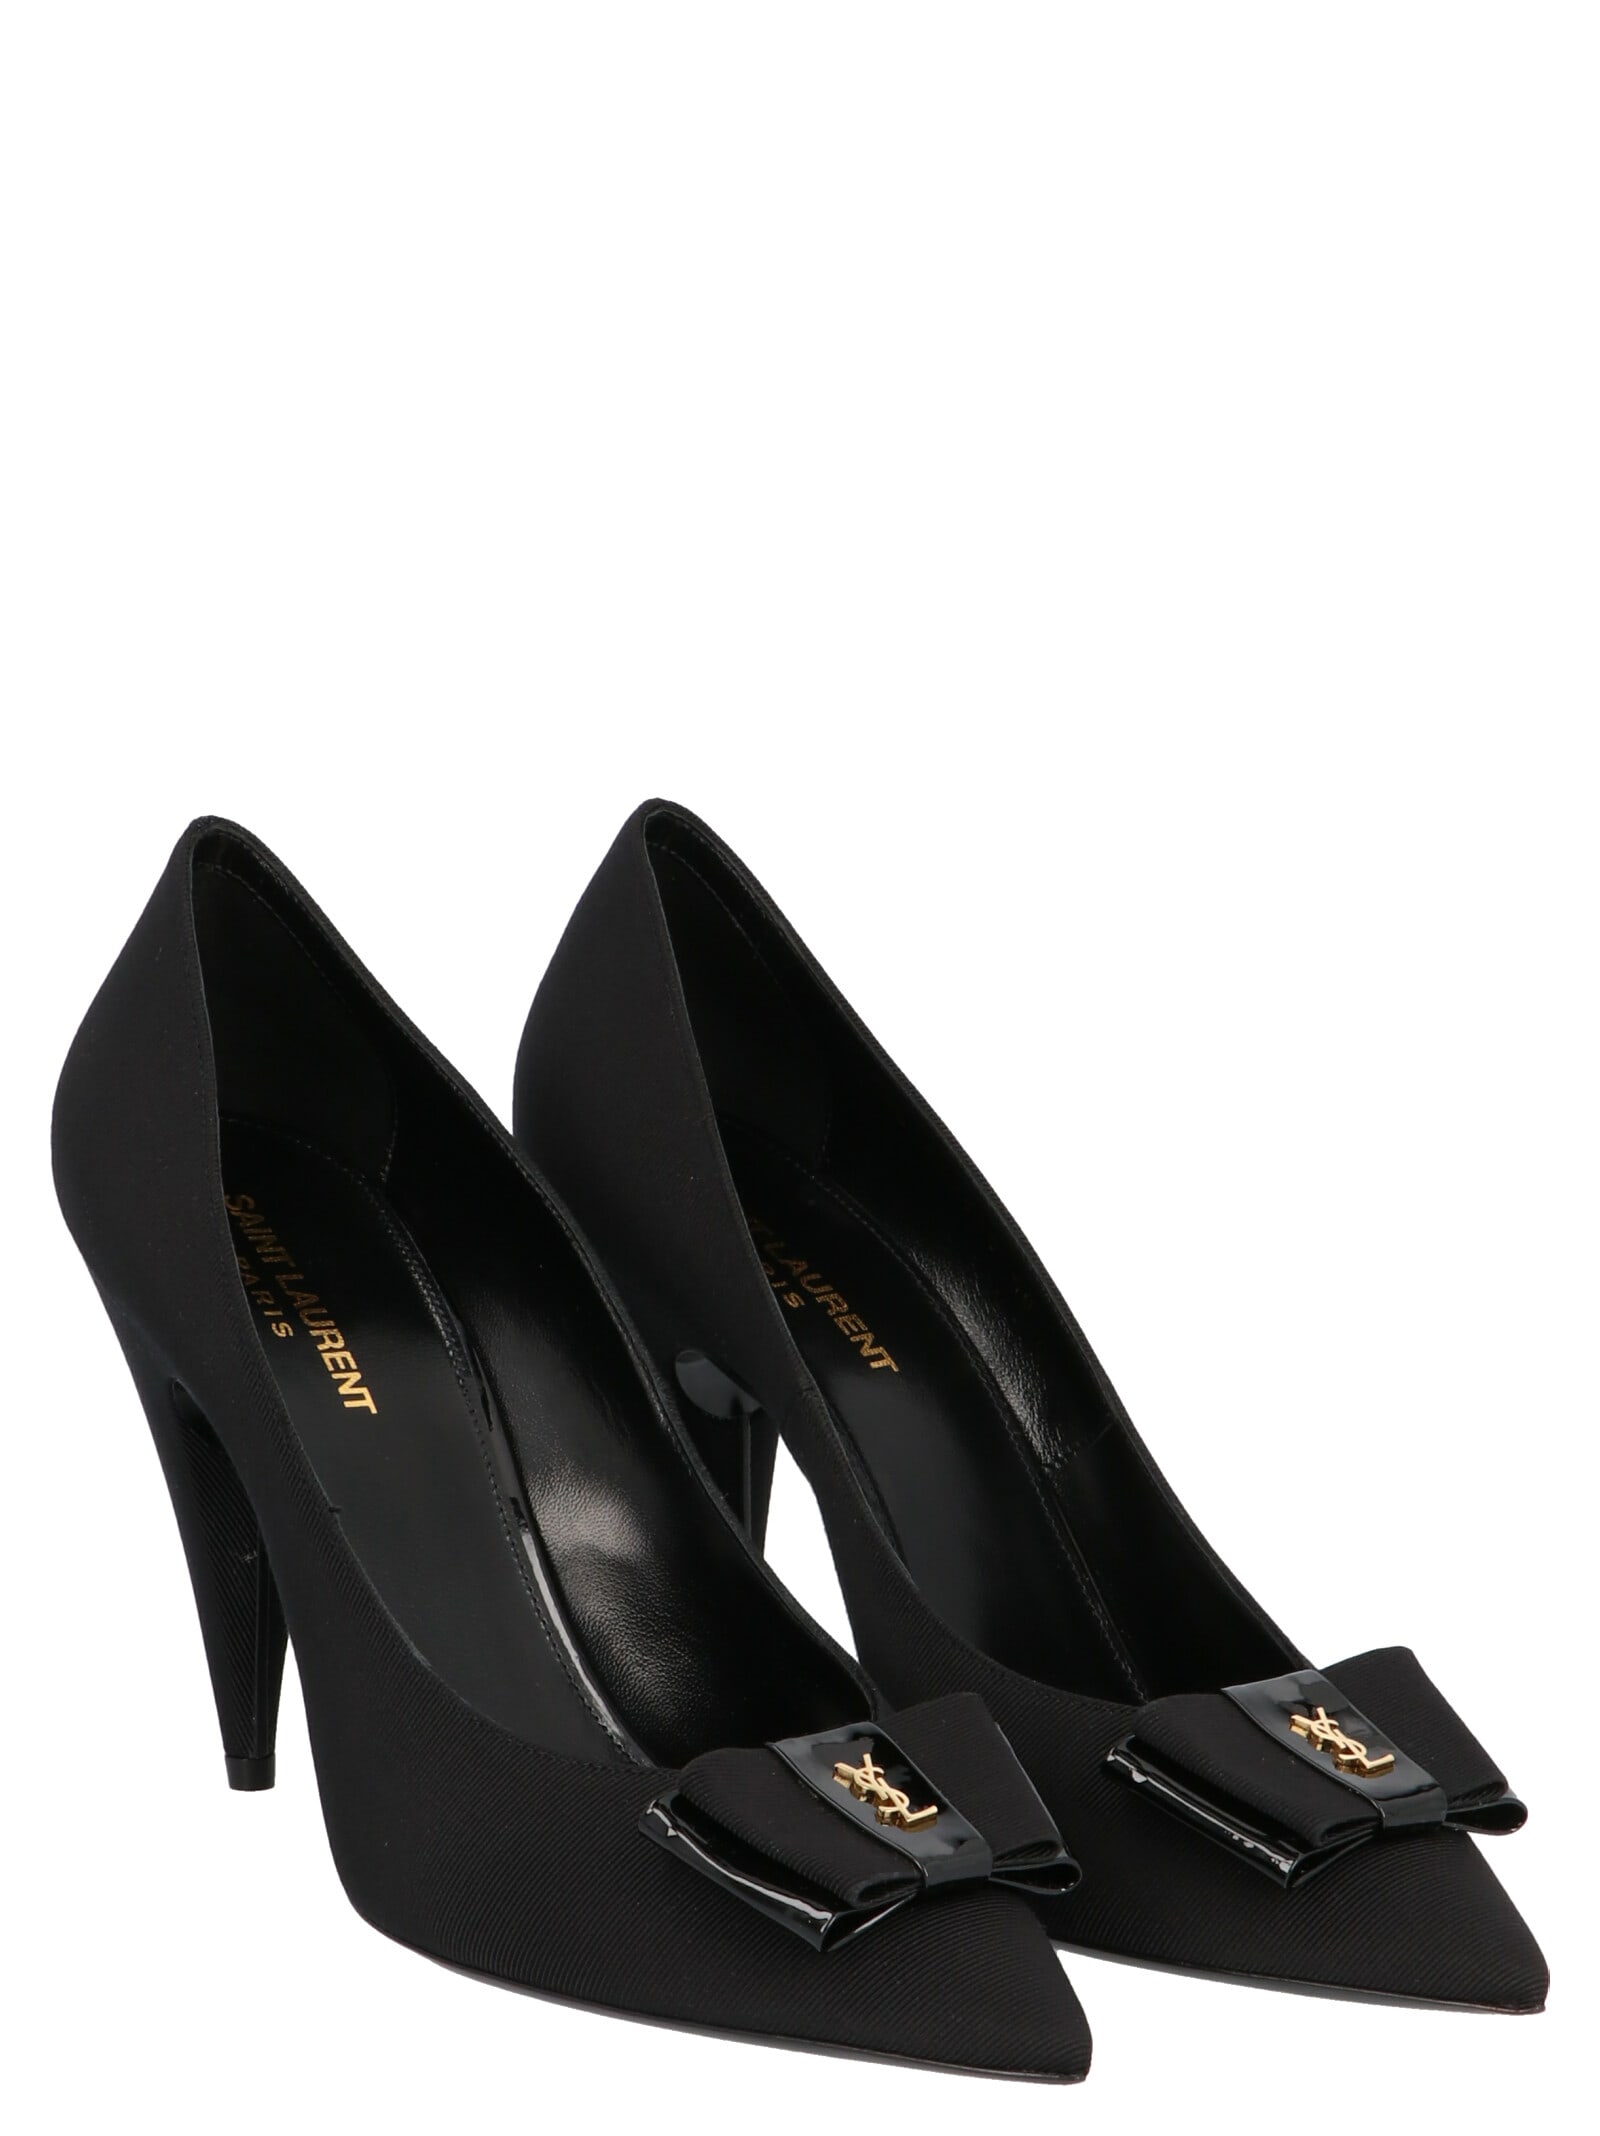 Buy Saint Laurent anais Shoes online, shop Saint Laurent shoes with free shipping